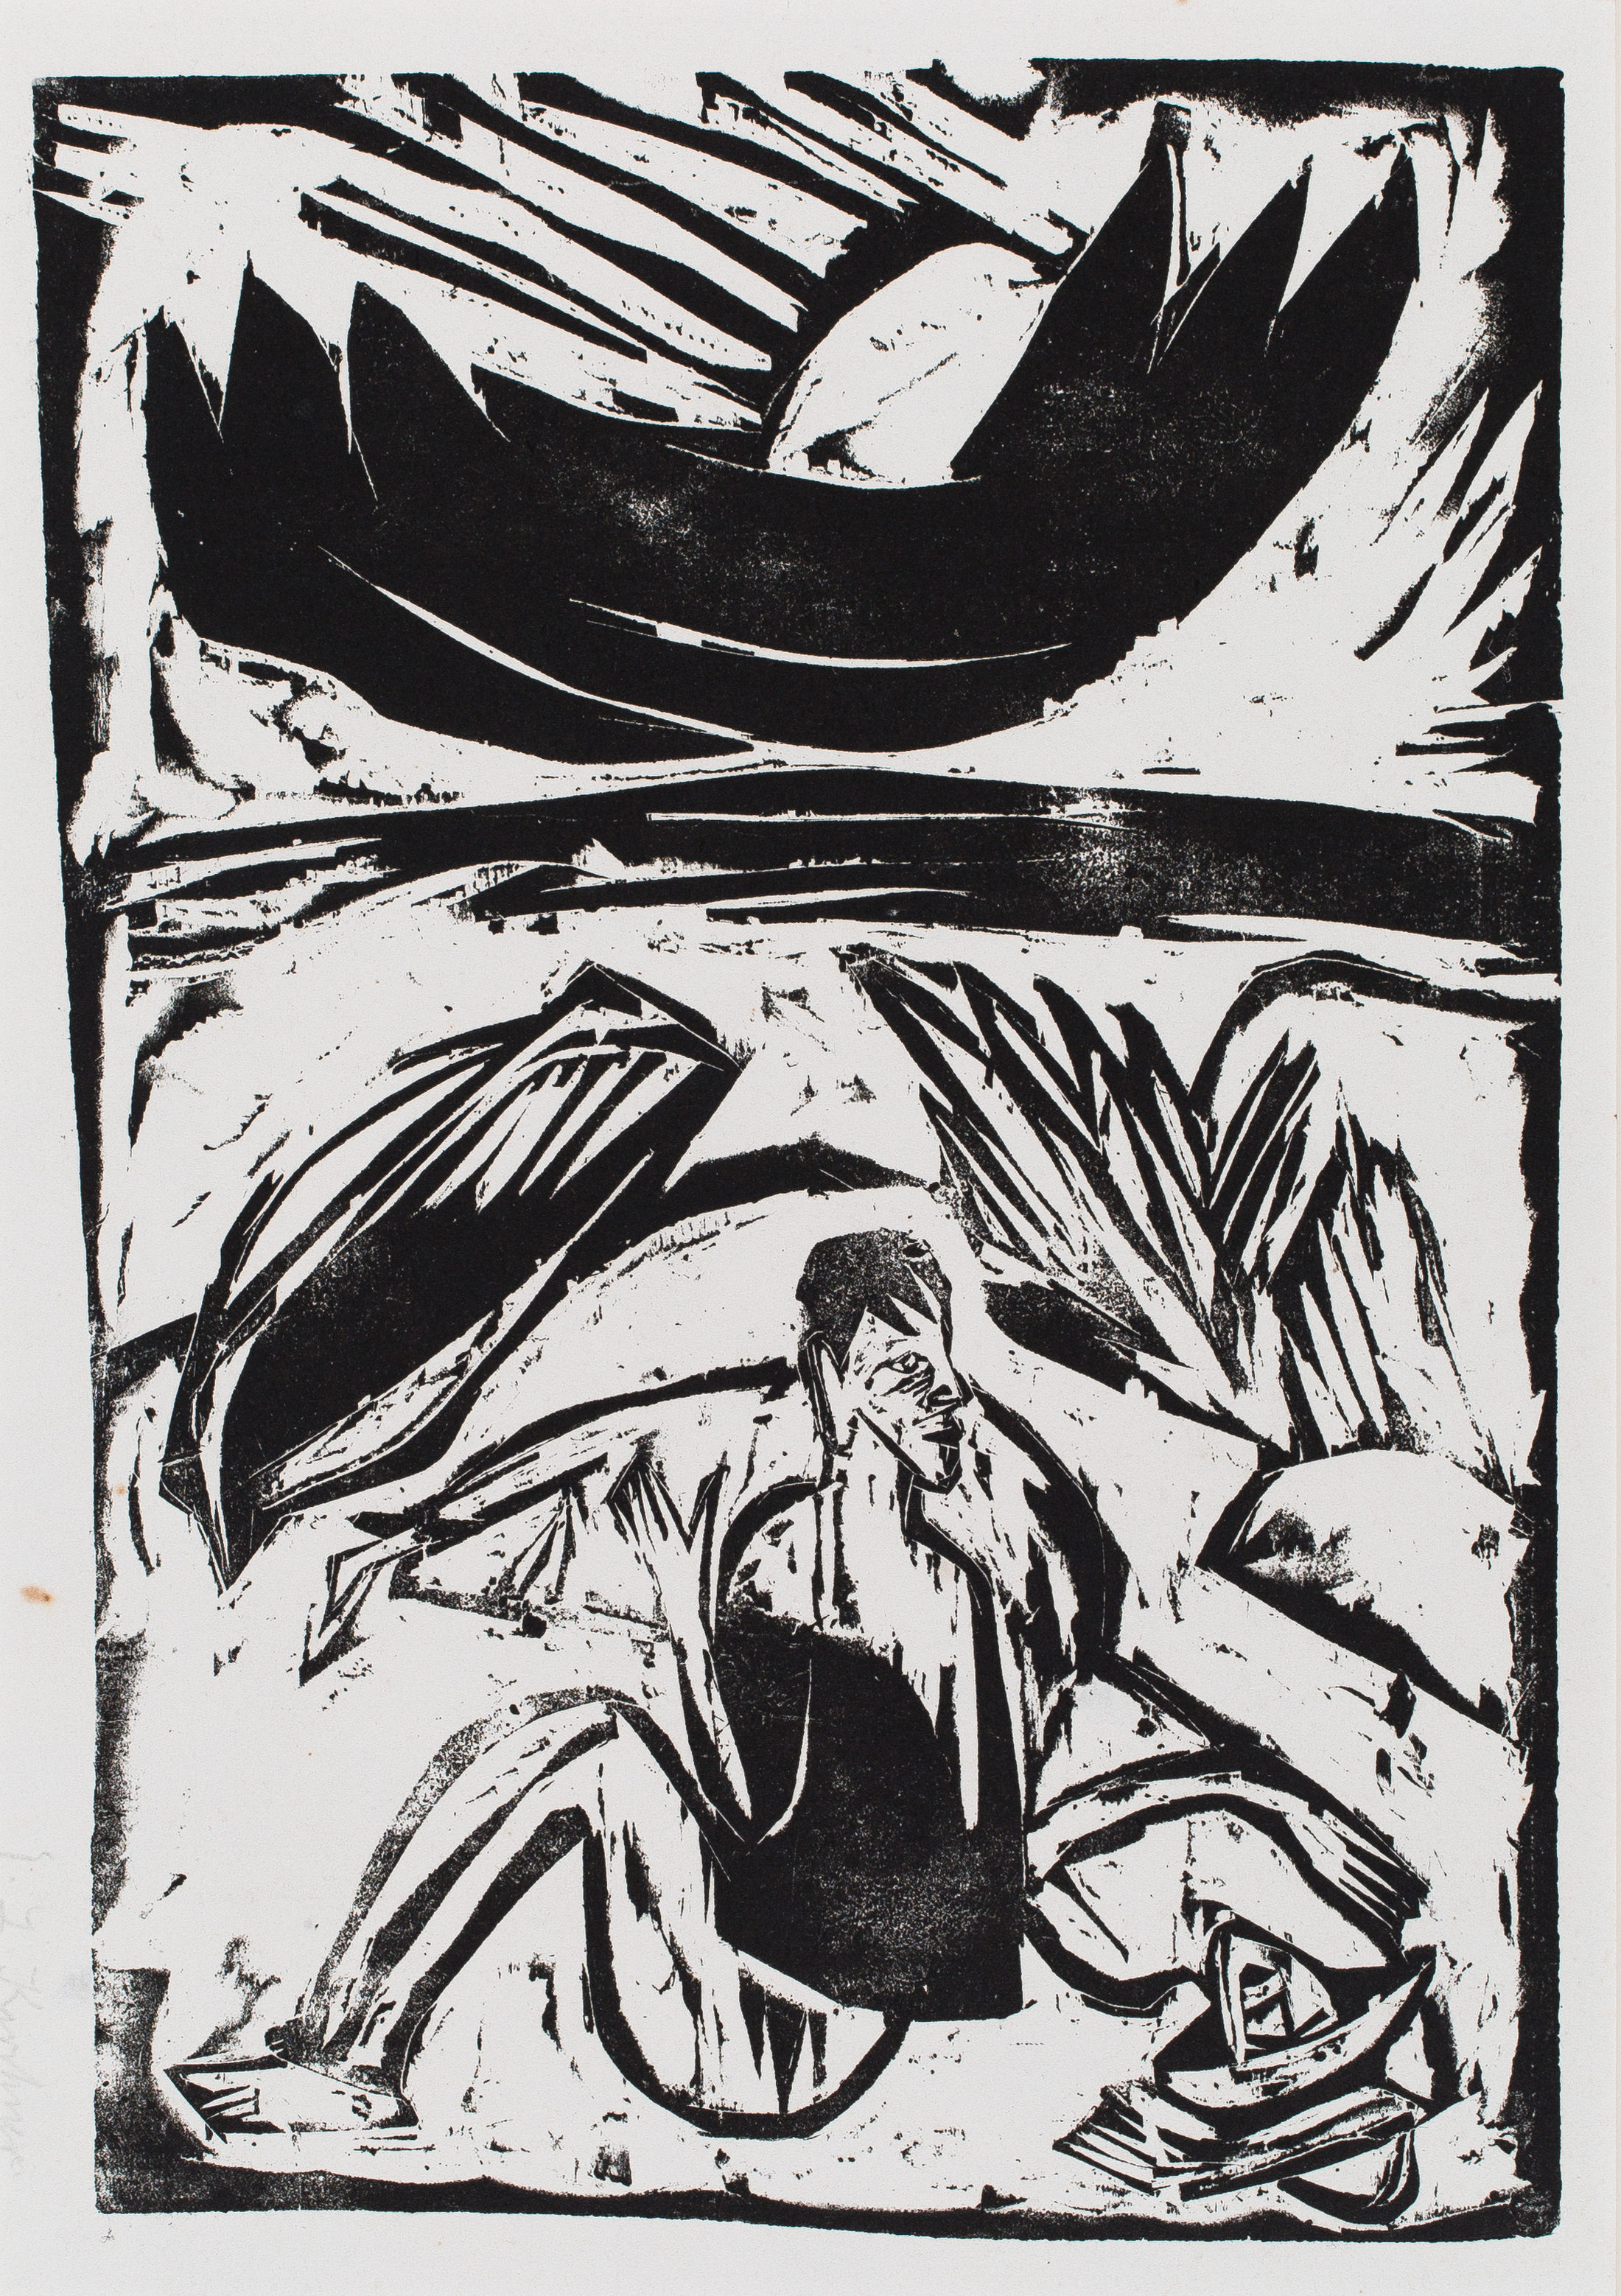 Ernst Ludwig Kirchner, Mann und Frau am Strand bei aufgehendem Mond, 1912, Holzschnitt, Städtisches Museum Braunschweig (Wird bei Klick vergrößert)